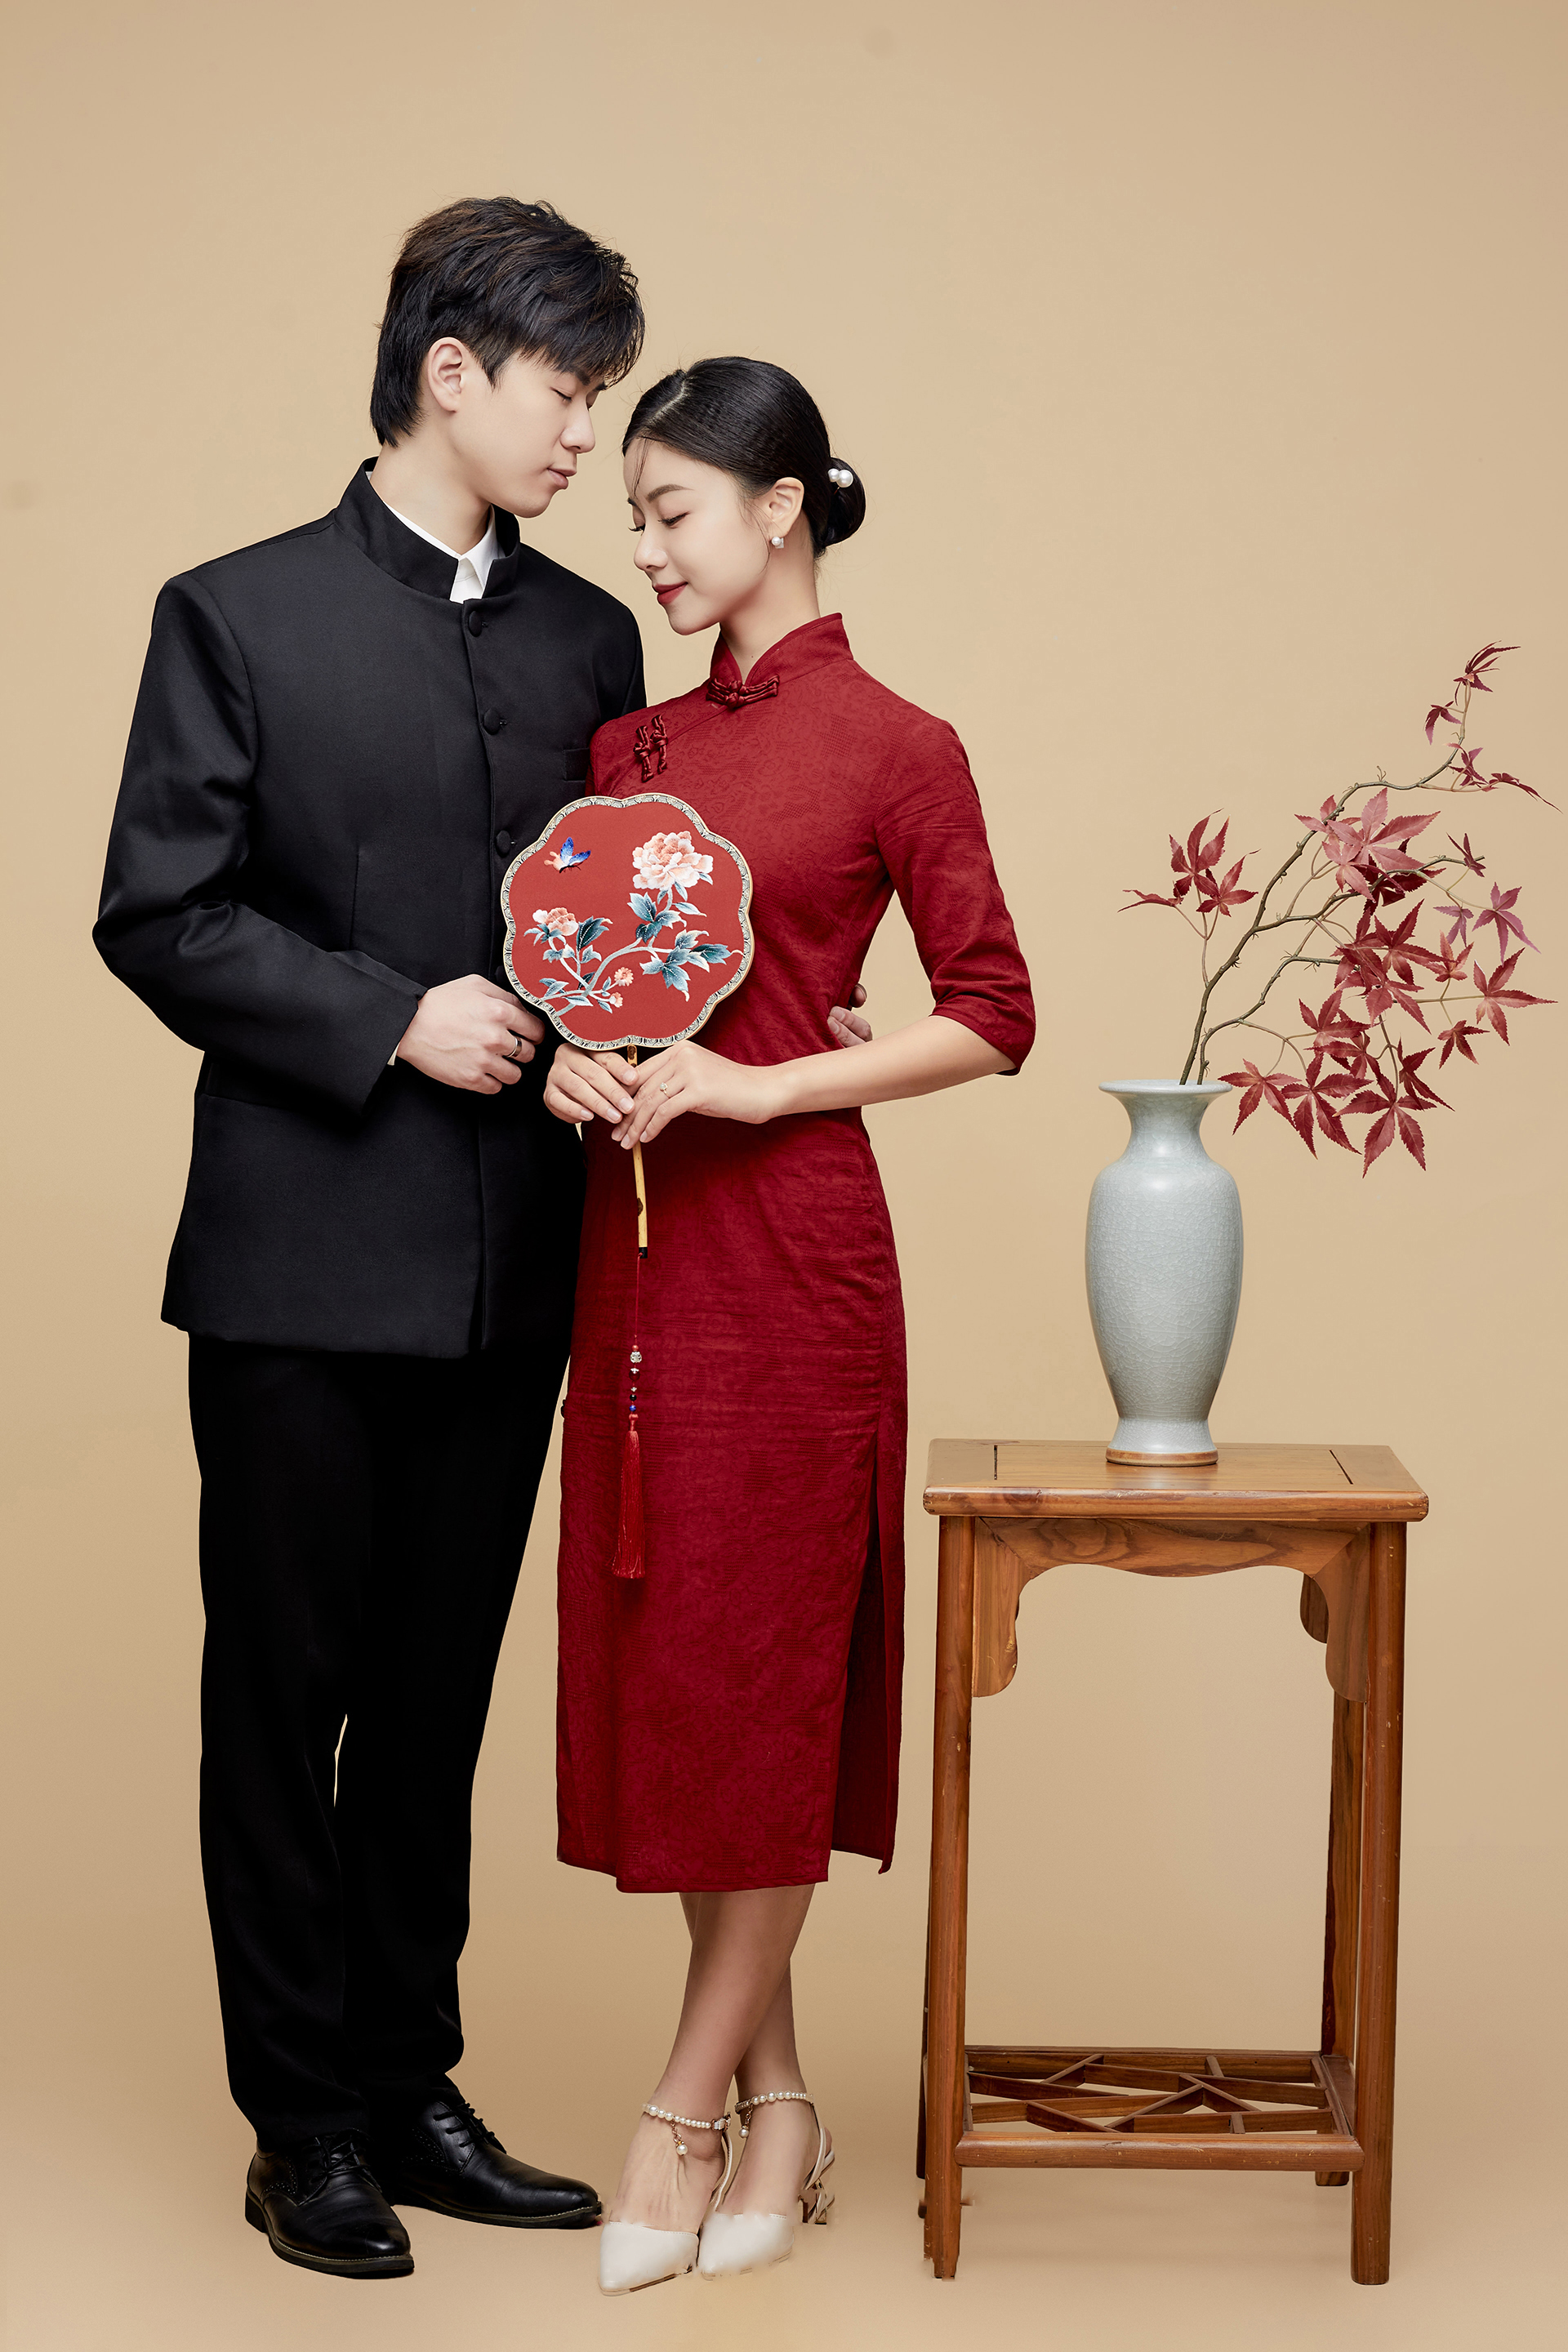 中式婚纱照赏析:郑州拍婚纱照哪家好看